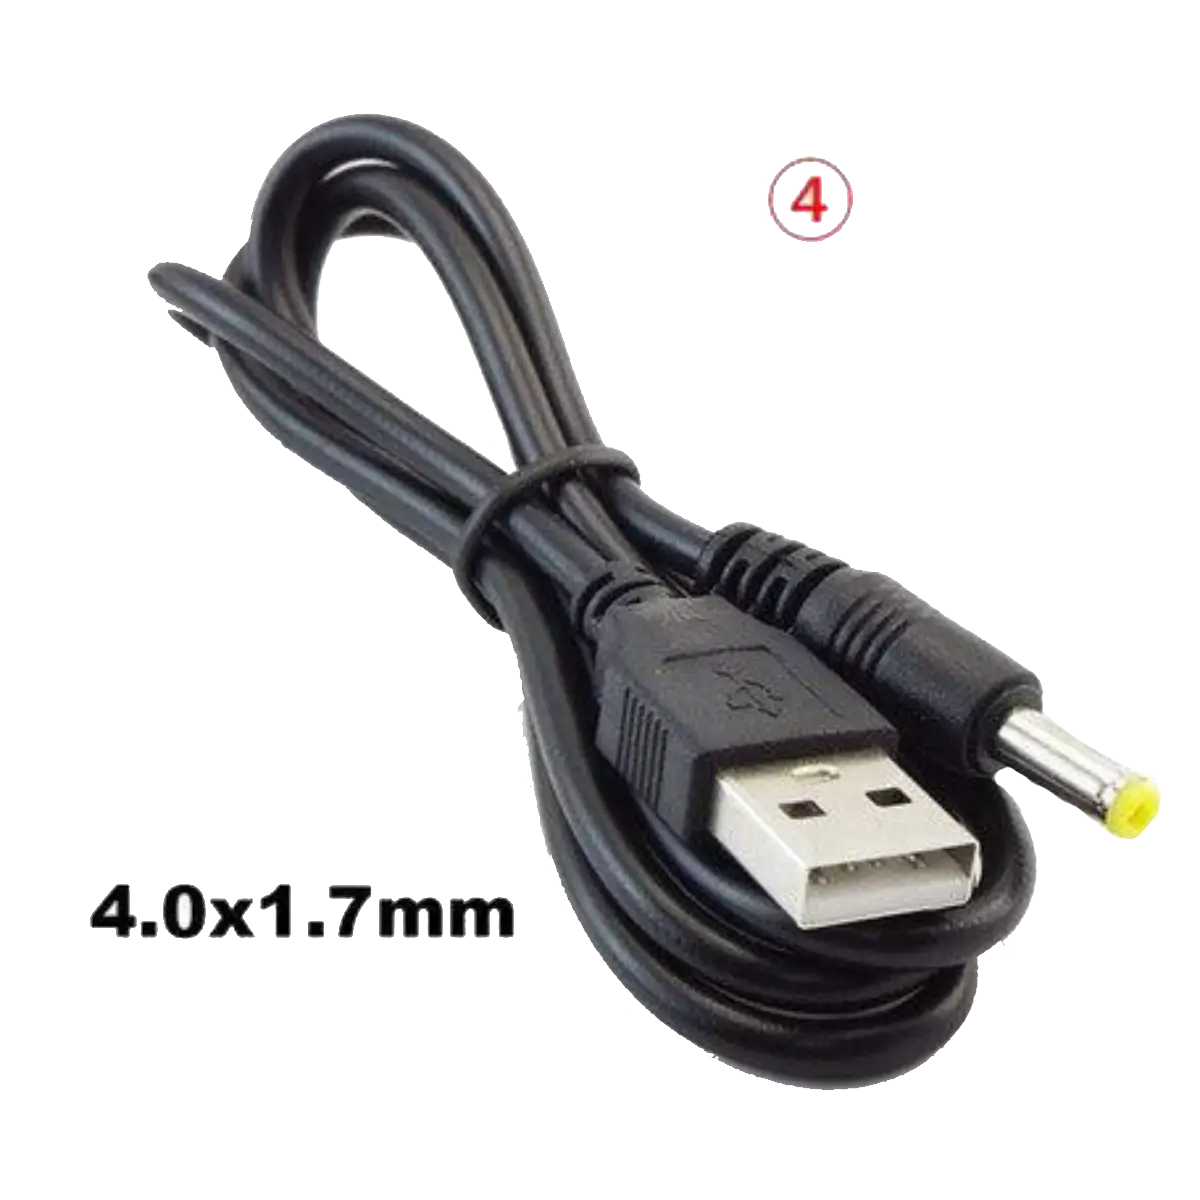 Câble d'alimentation DC USB vers Jack DC 4 x 1.7mm